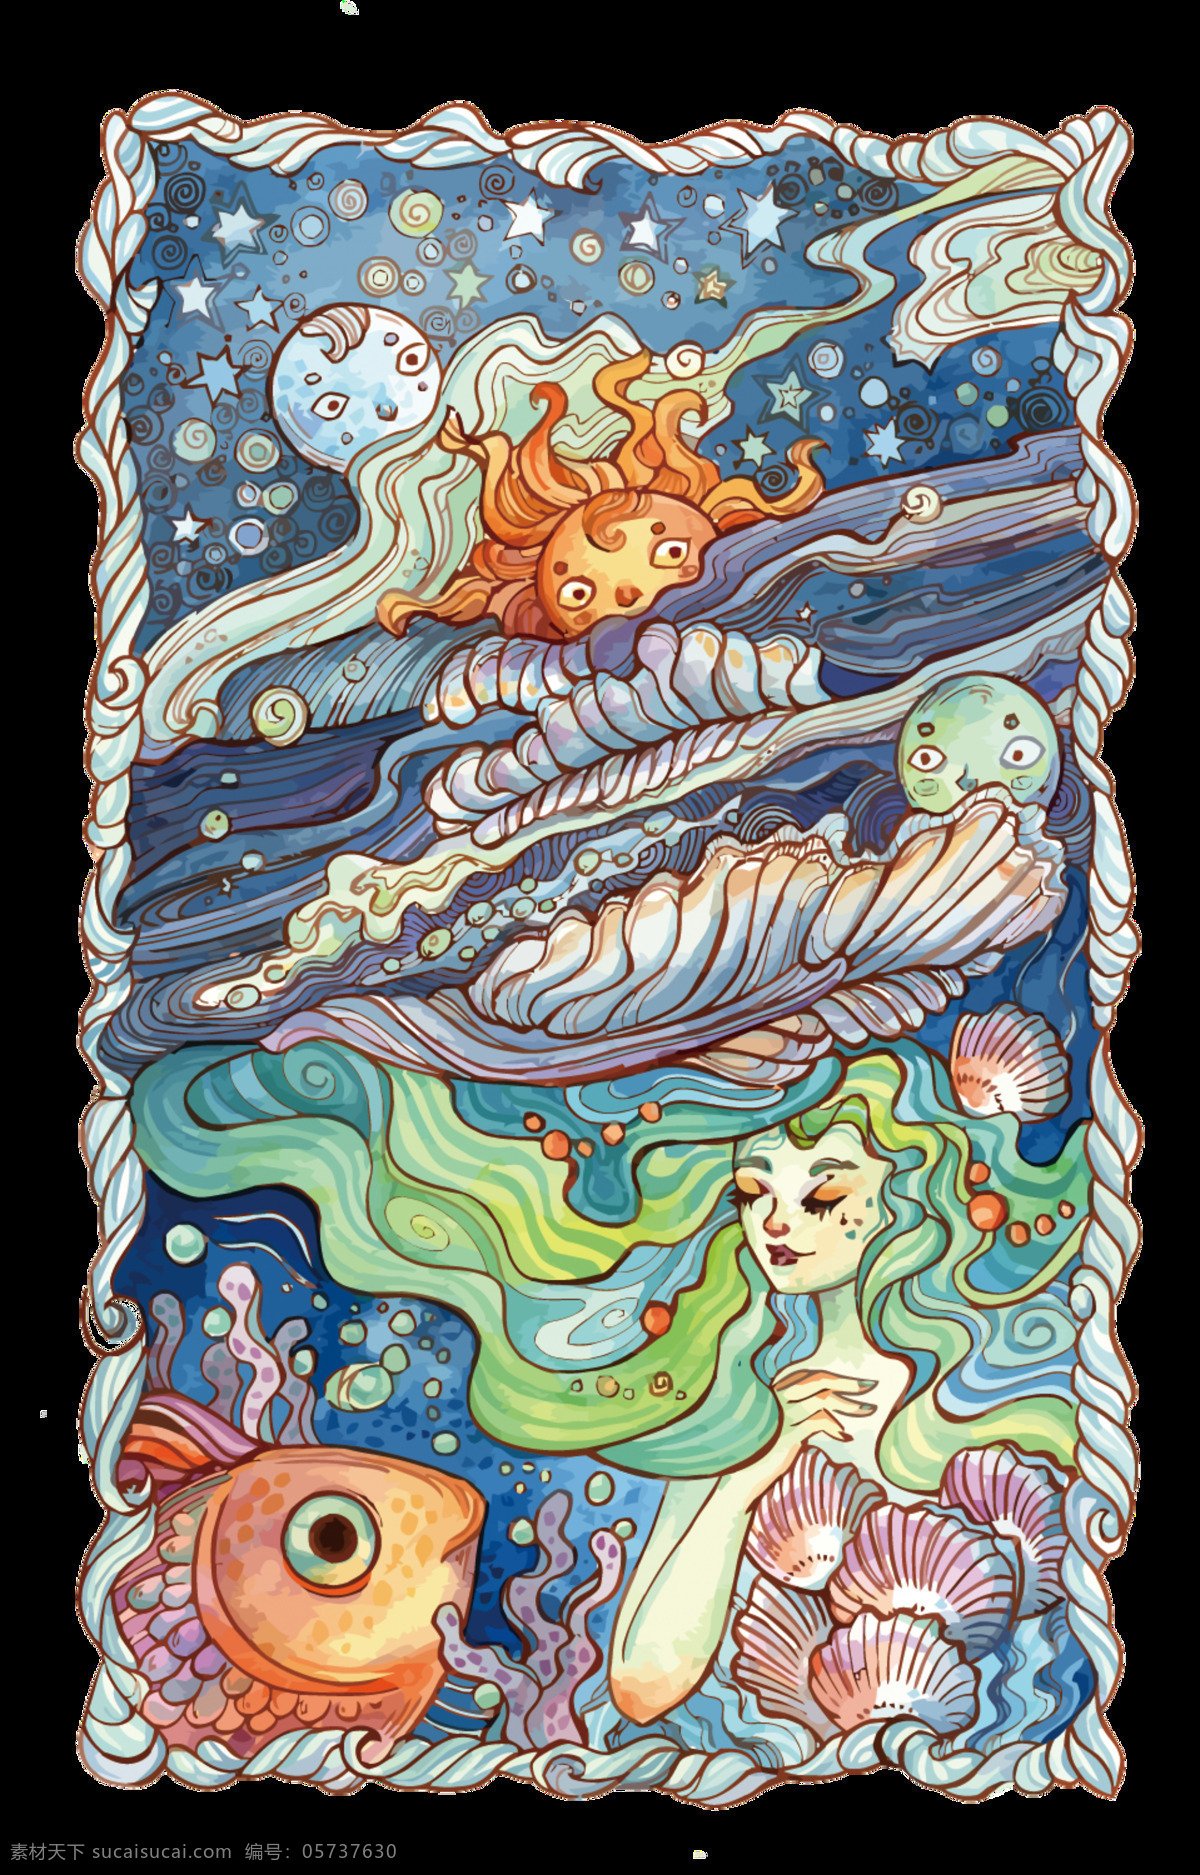 彩绘 童话 海底 世界 图案 元素 海底世界 卡通装饰 美人鱼 免扣素材 手绘图 童话世界 童话装饰物 鱼